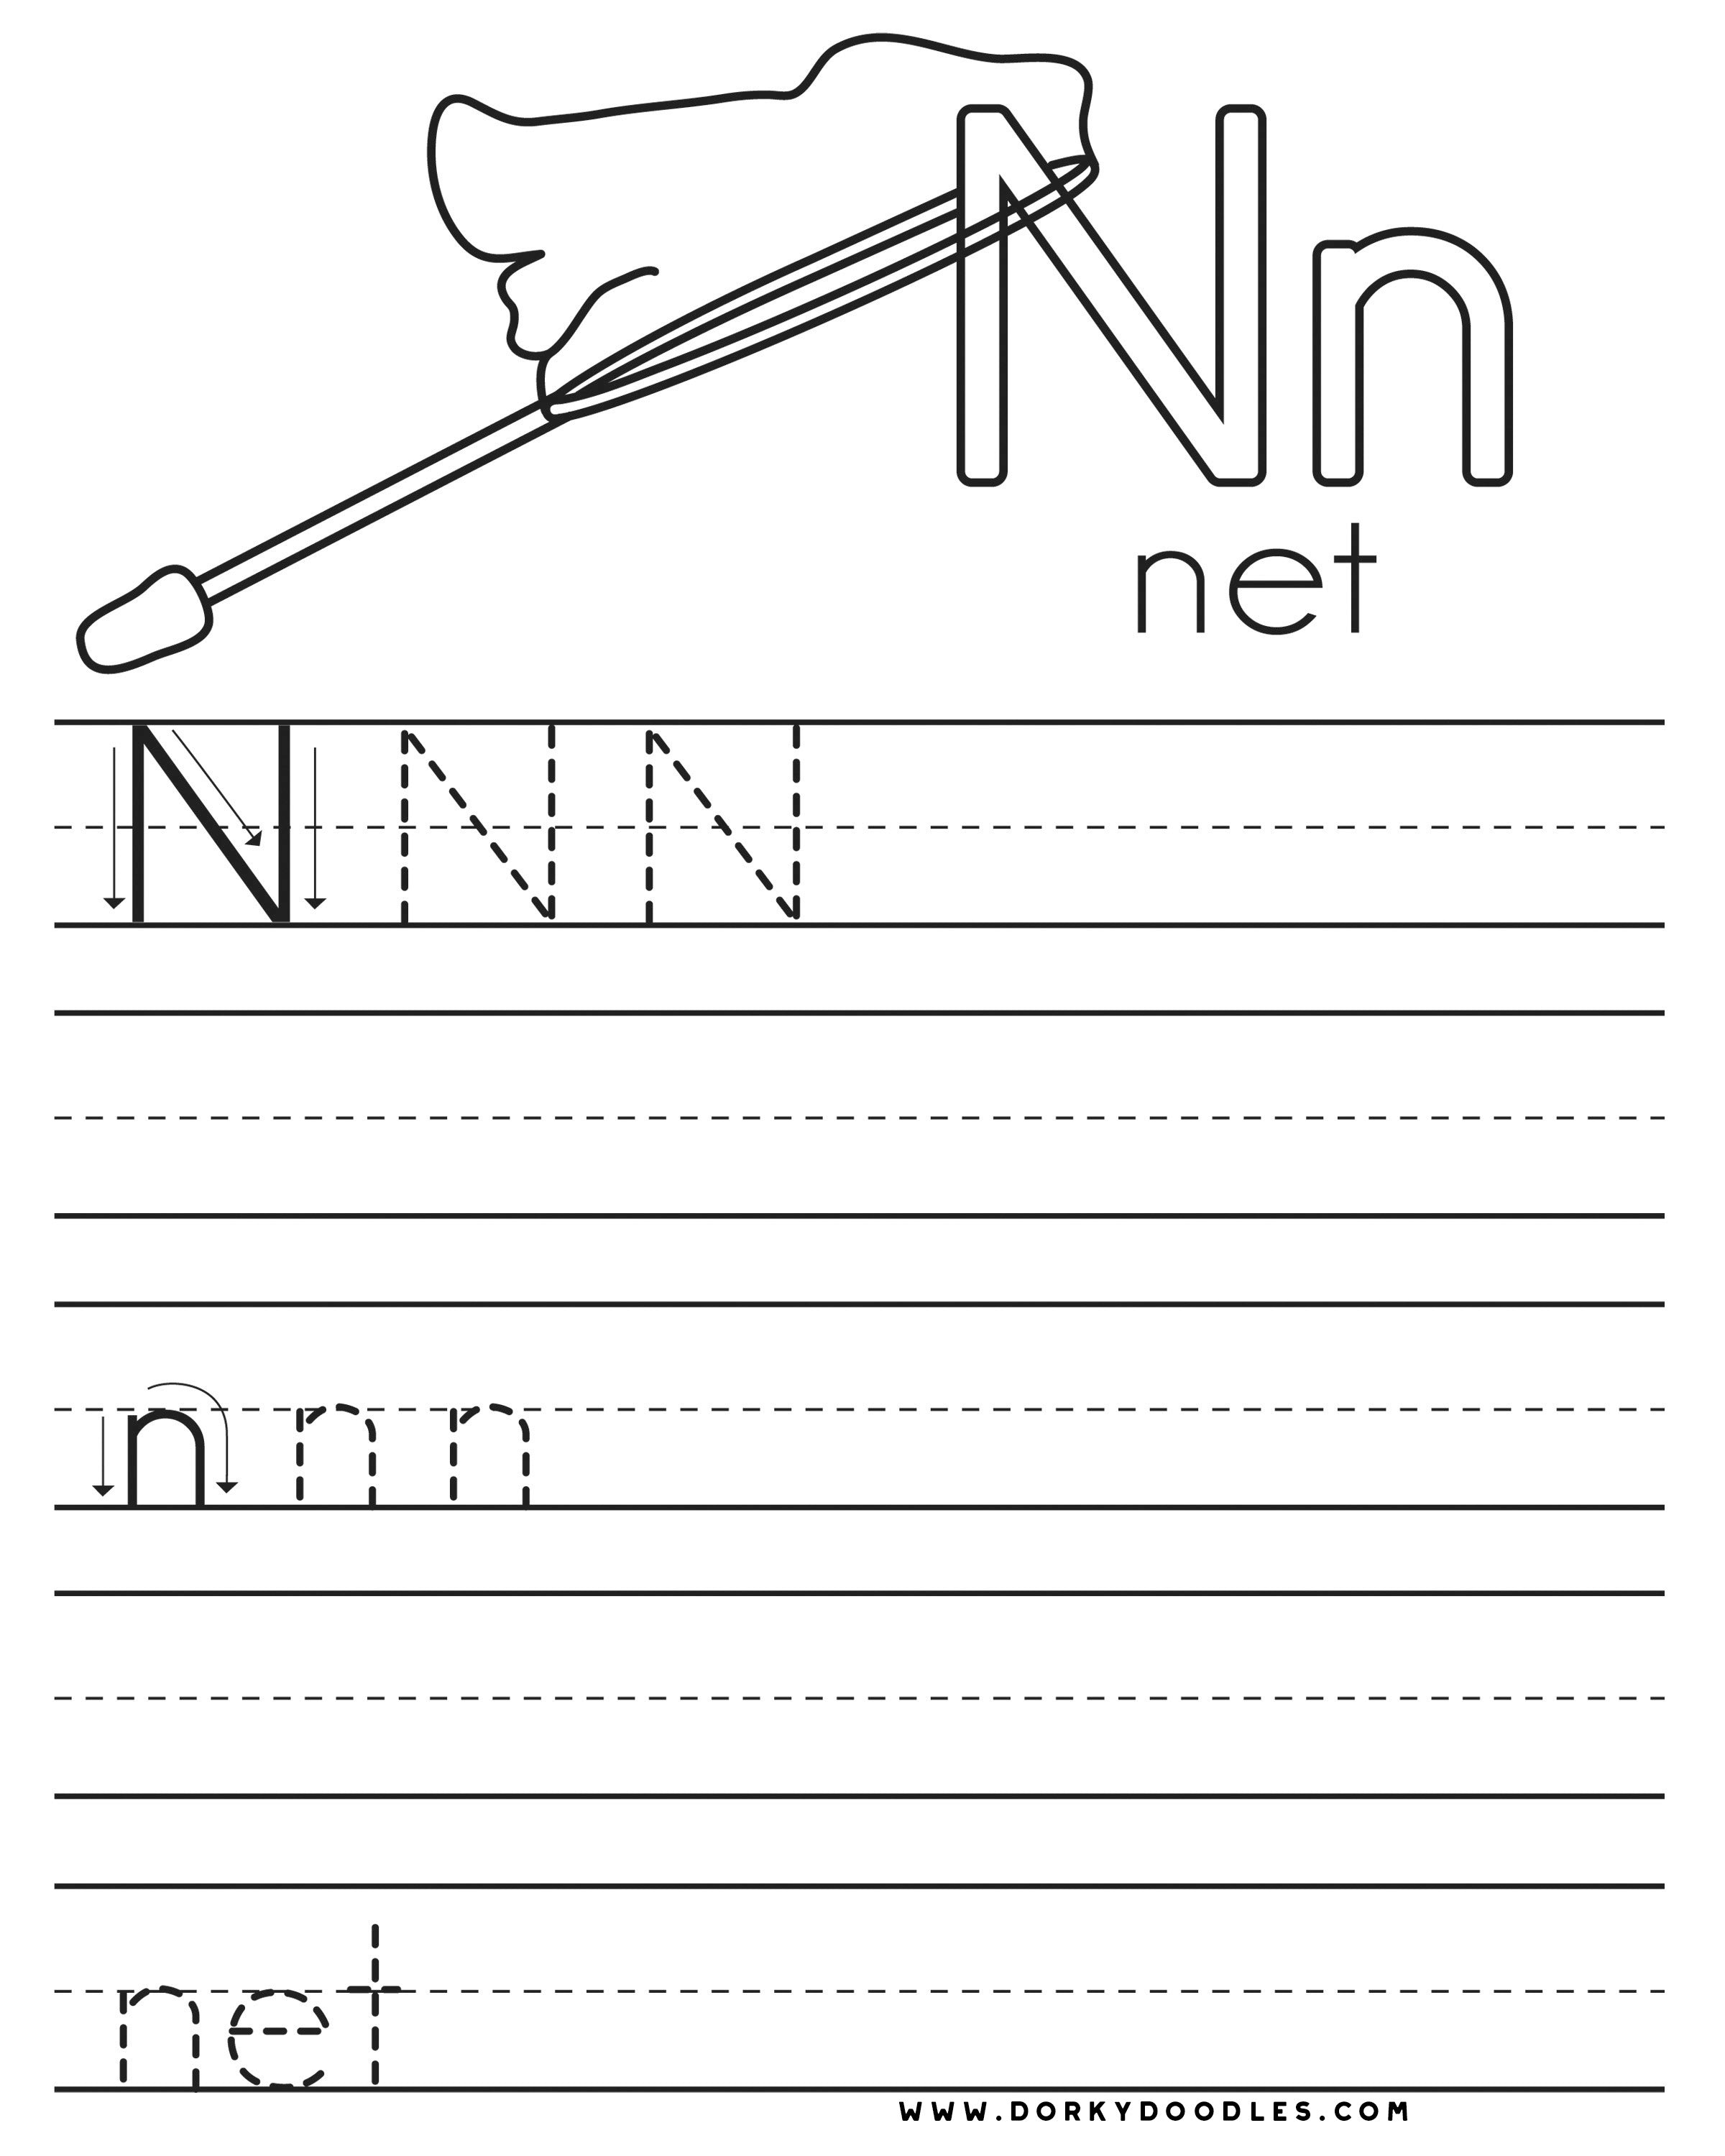 Letter practice n worksheets â dorky doodles